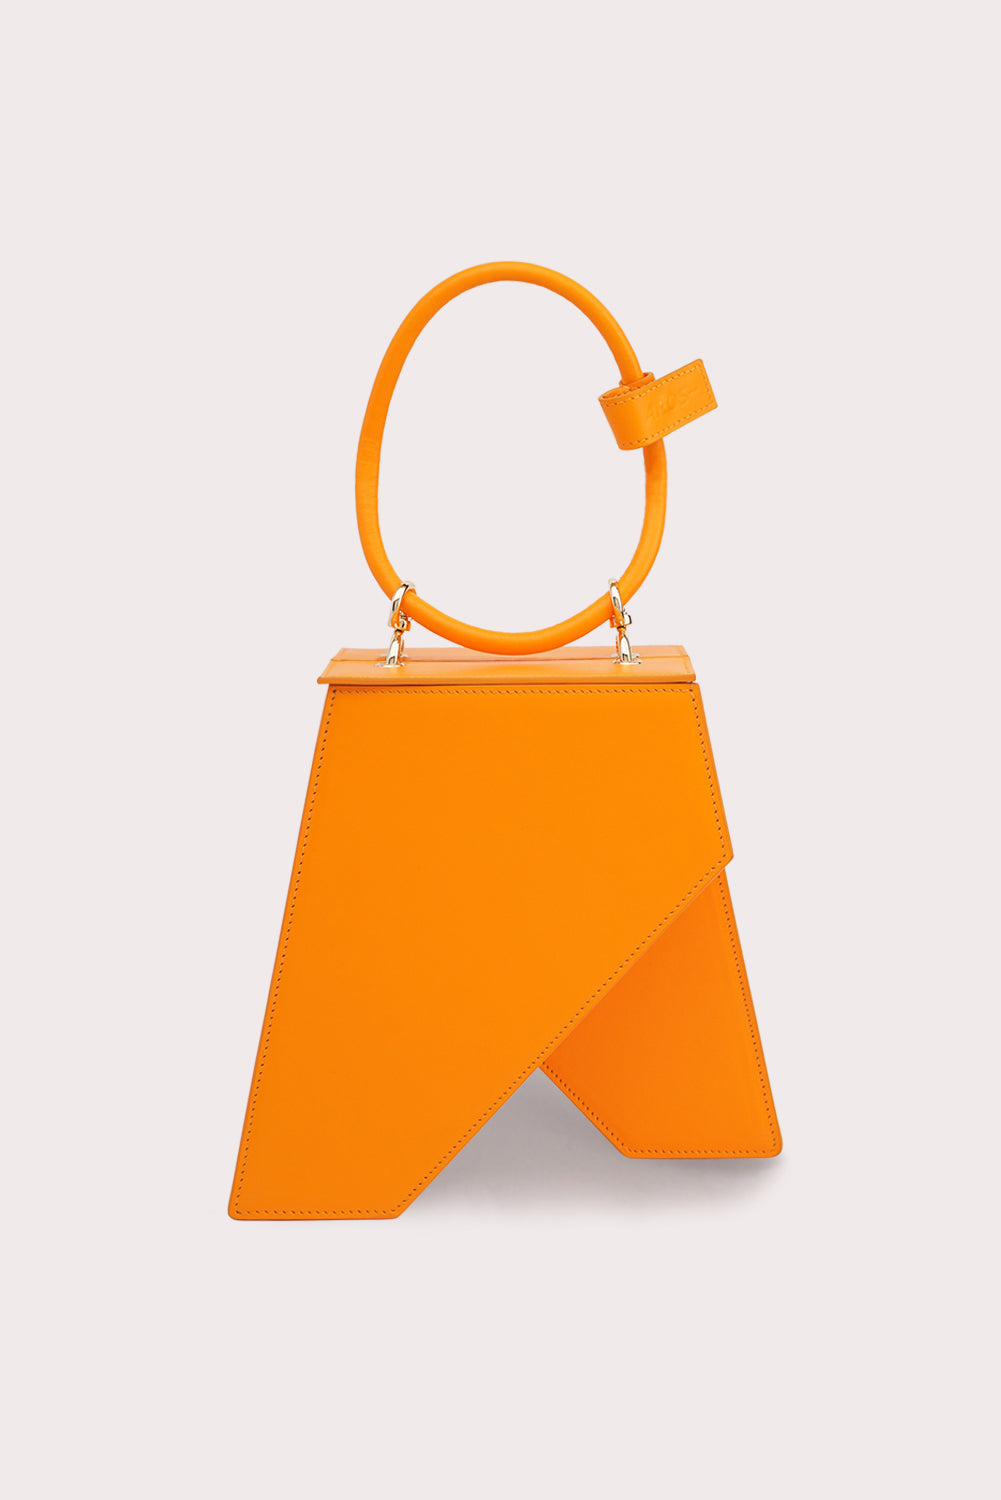 Trapezoid Tapo Bag in Mango Orange-2